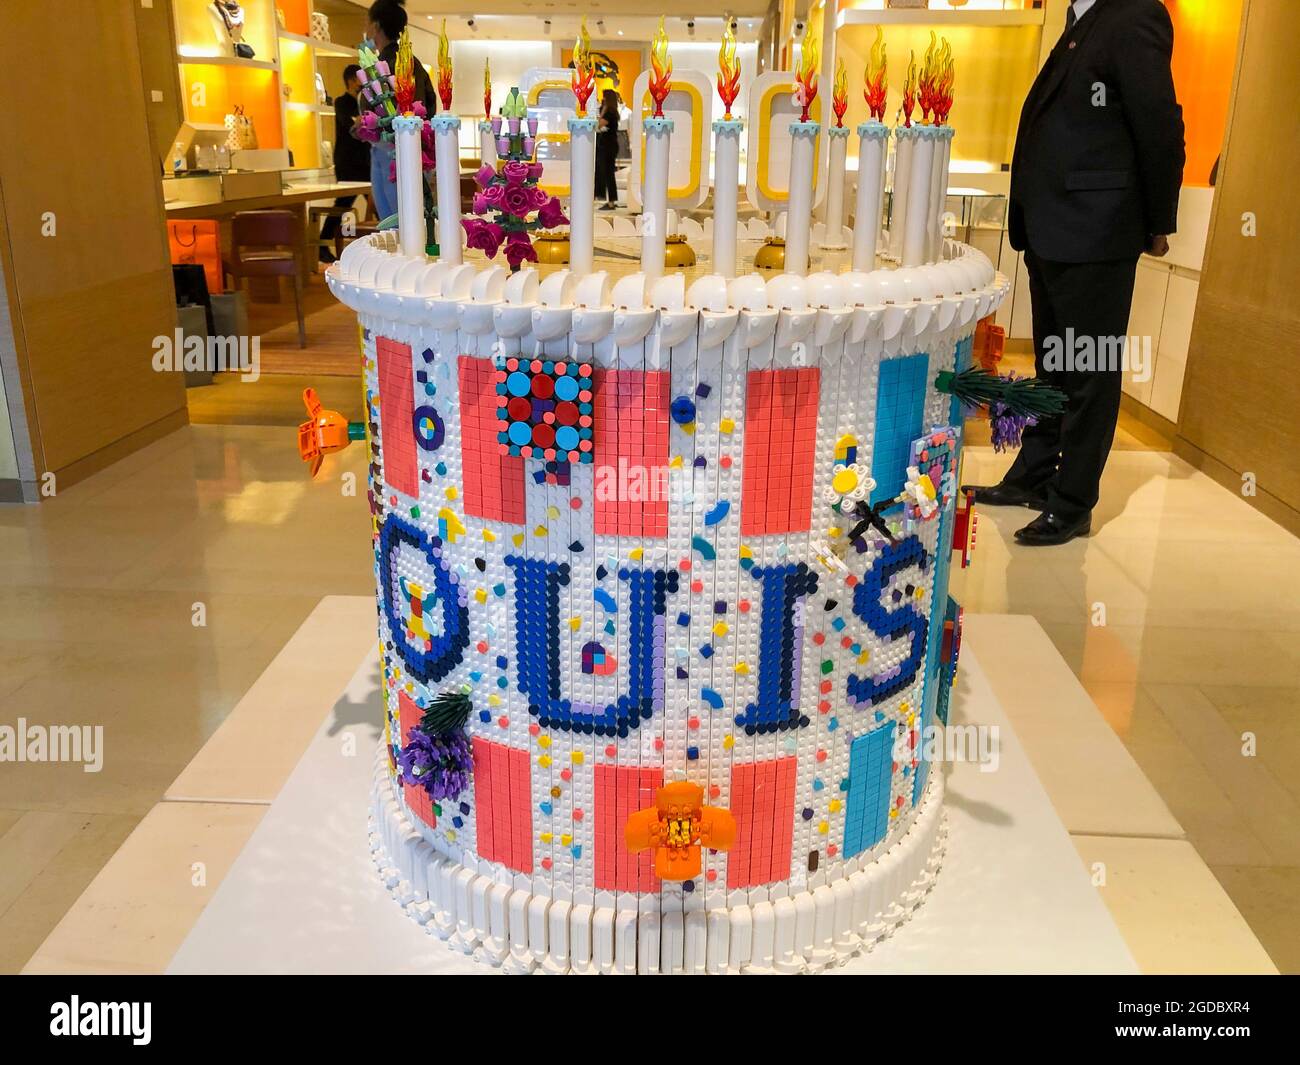 Louis Vuitton Birthday/Anniversary Cake